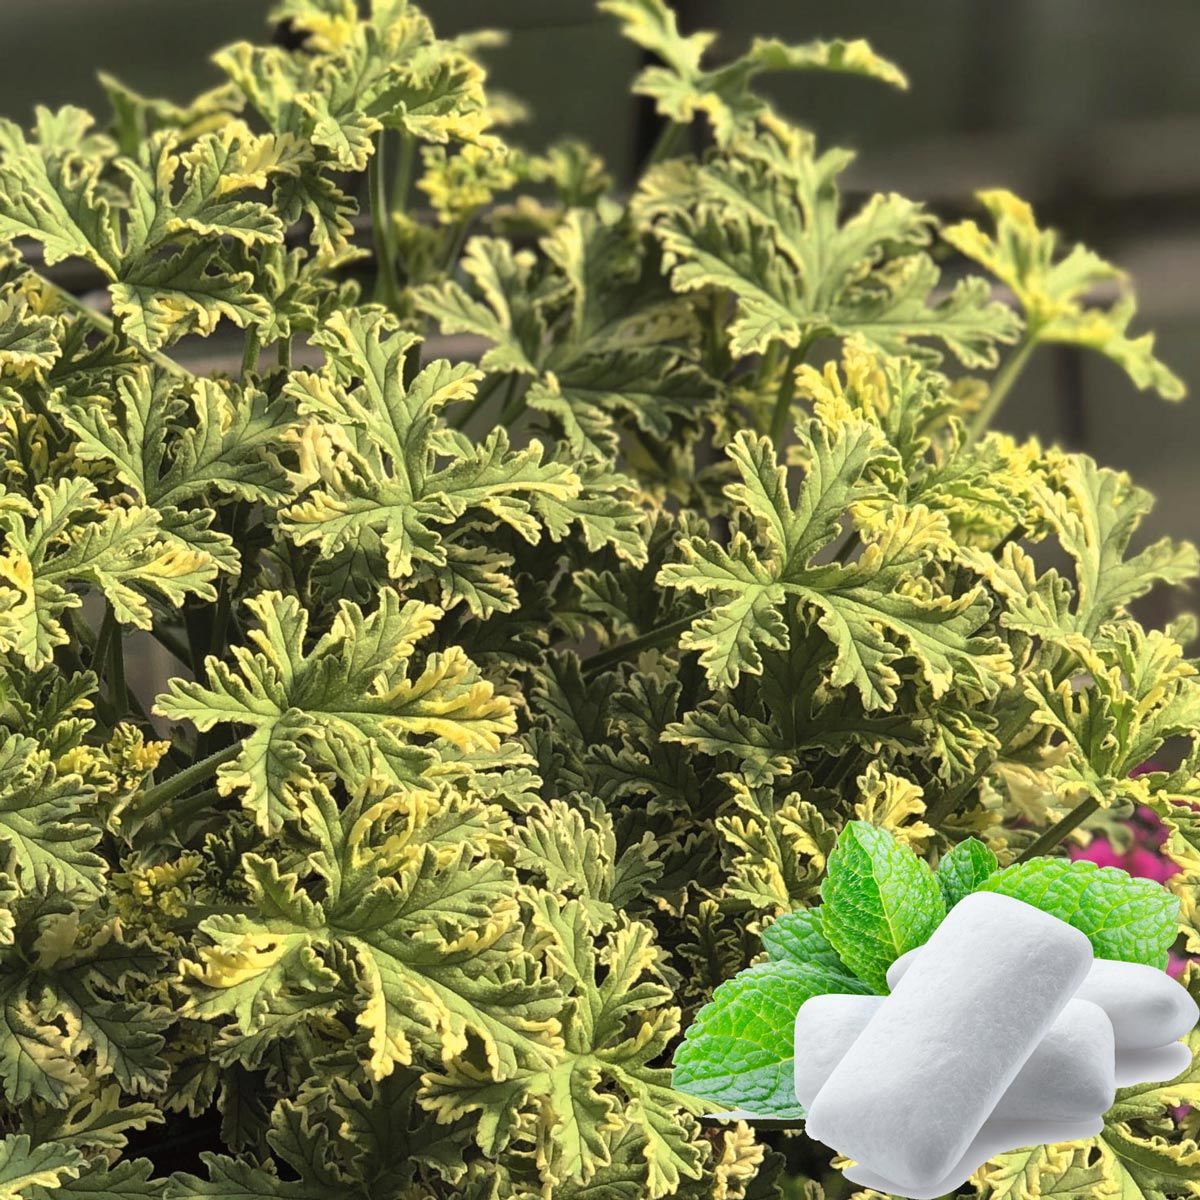 Peppermint Nane kokulu sardunya pelargonium odorata